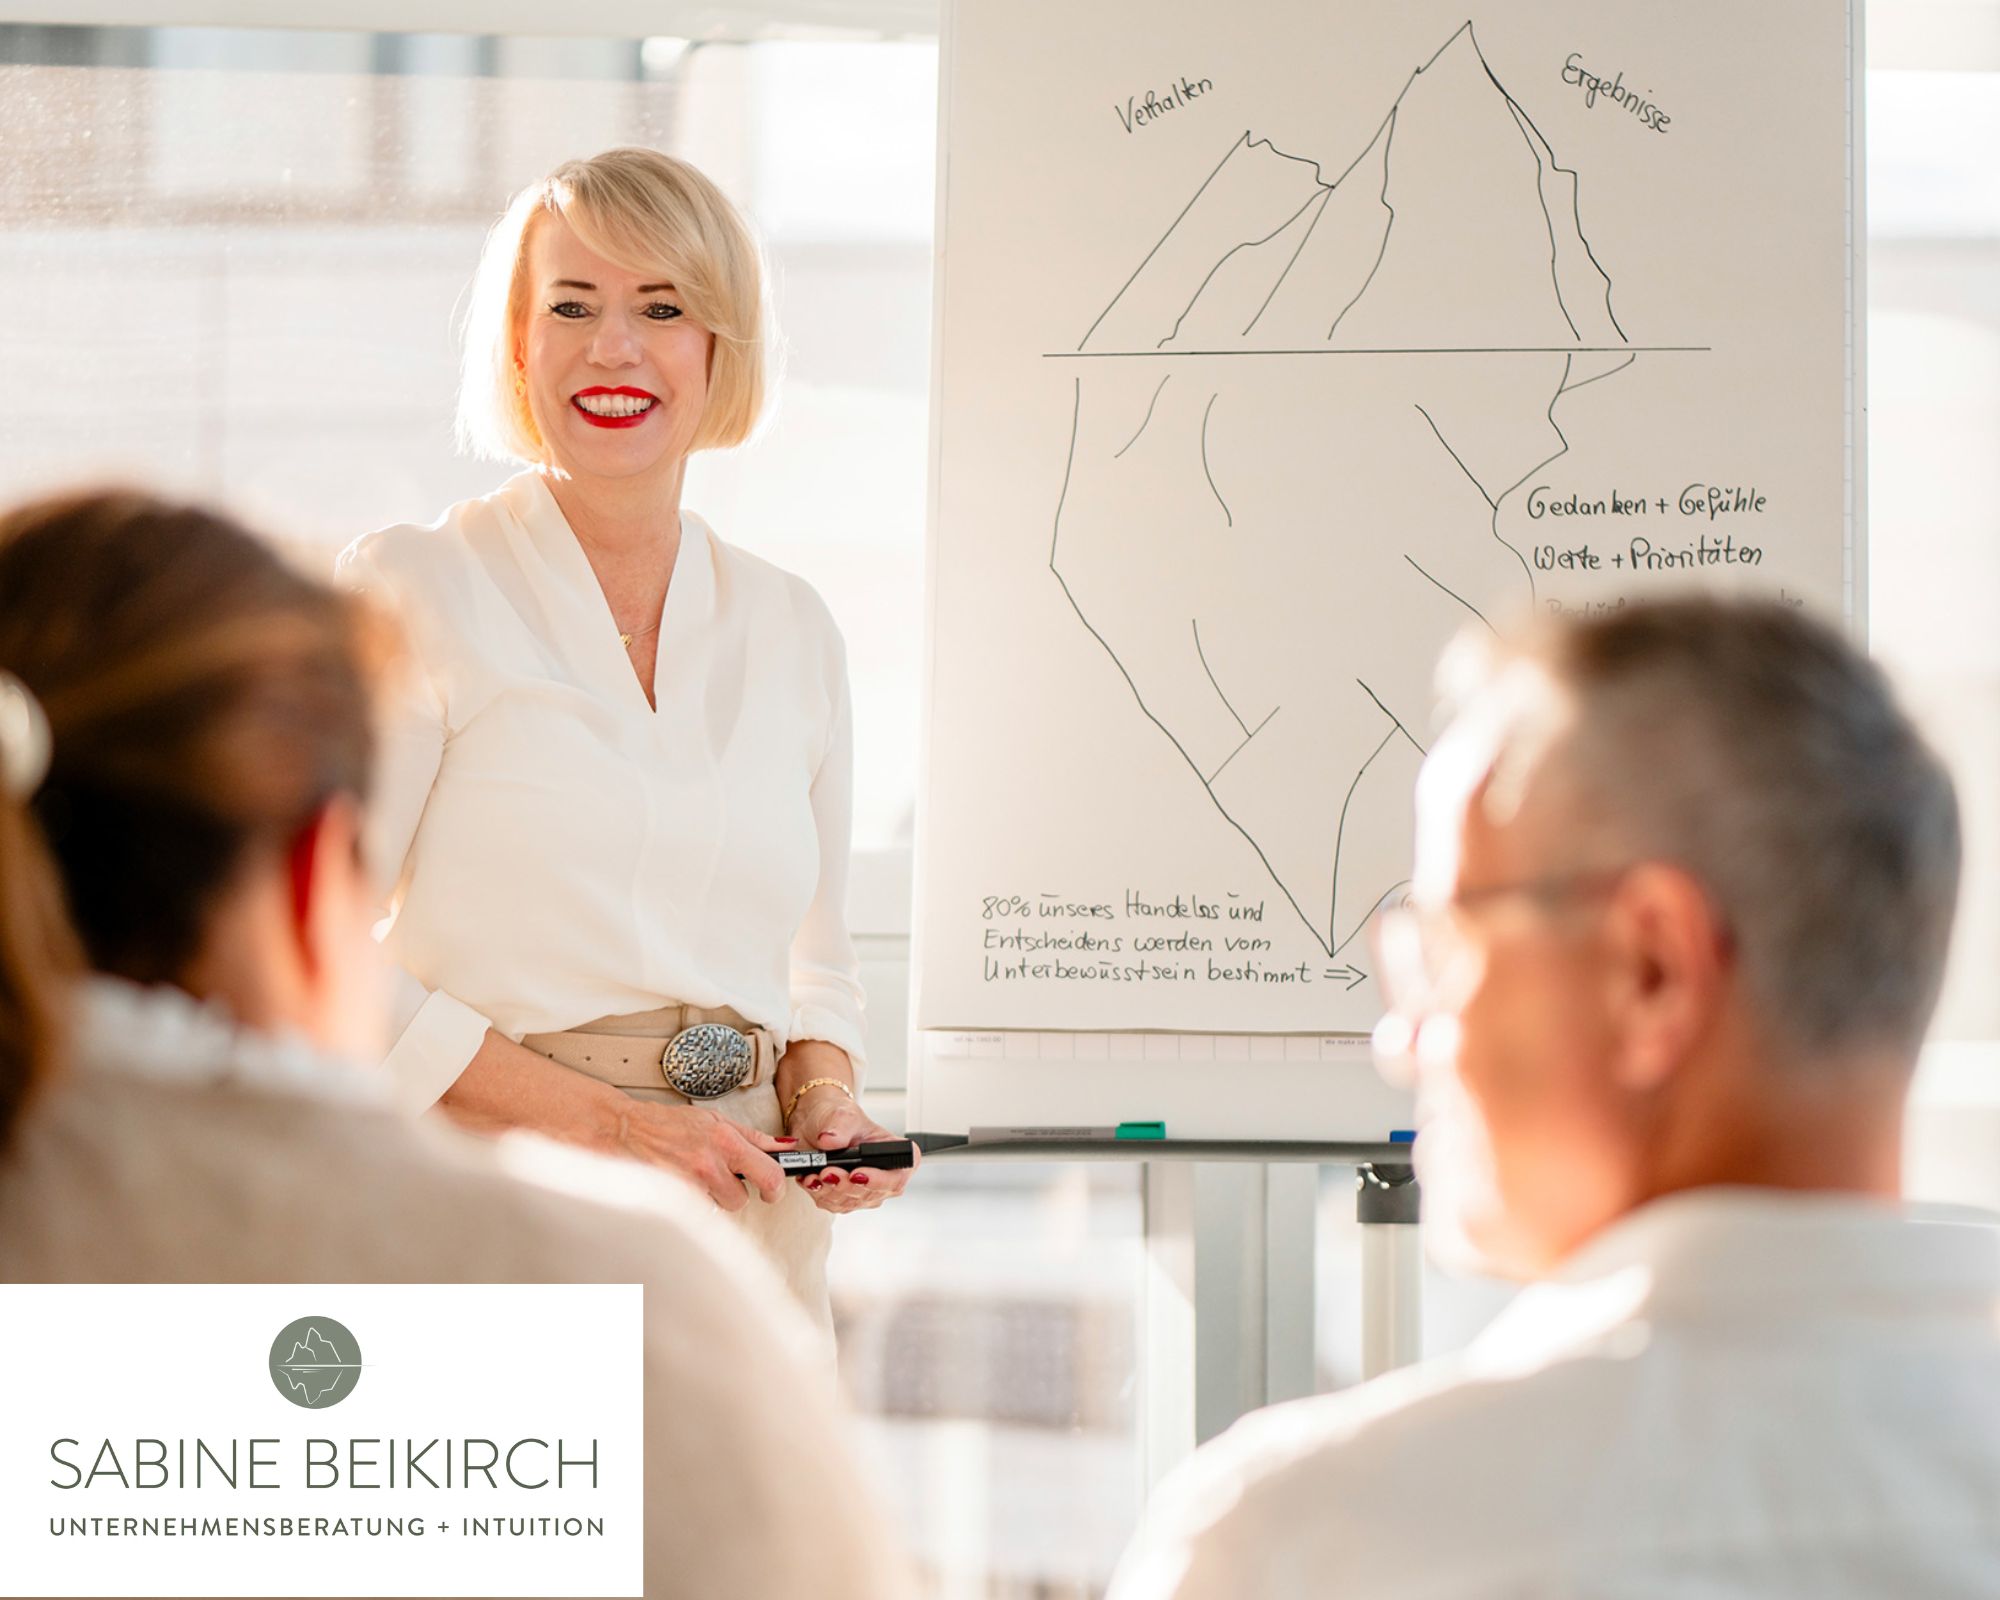 Sabine Beikirch – Unternehmensberatung mit Intuition und Rationalität!